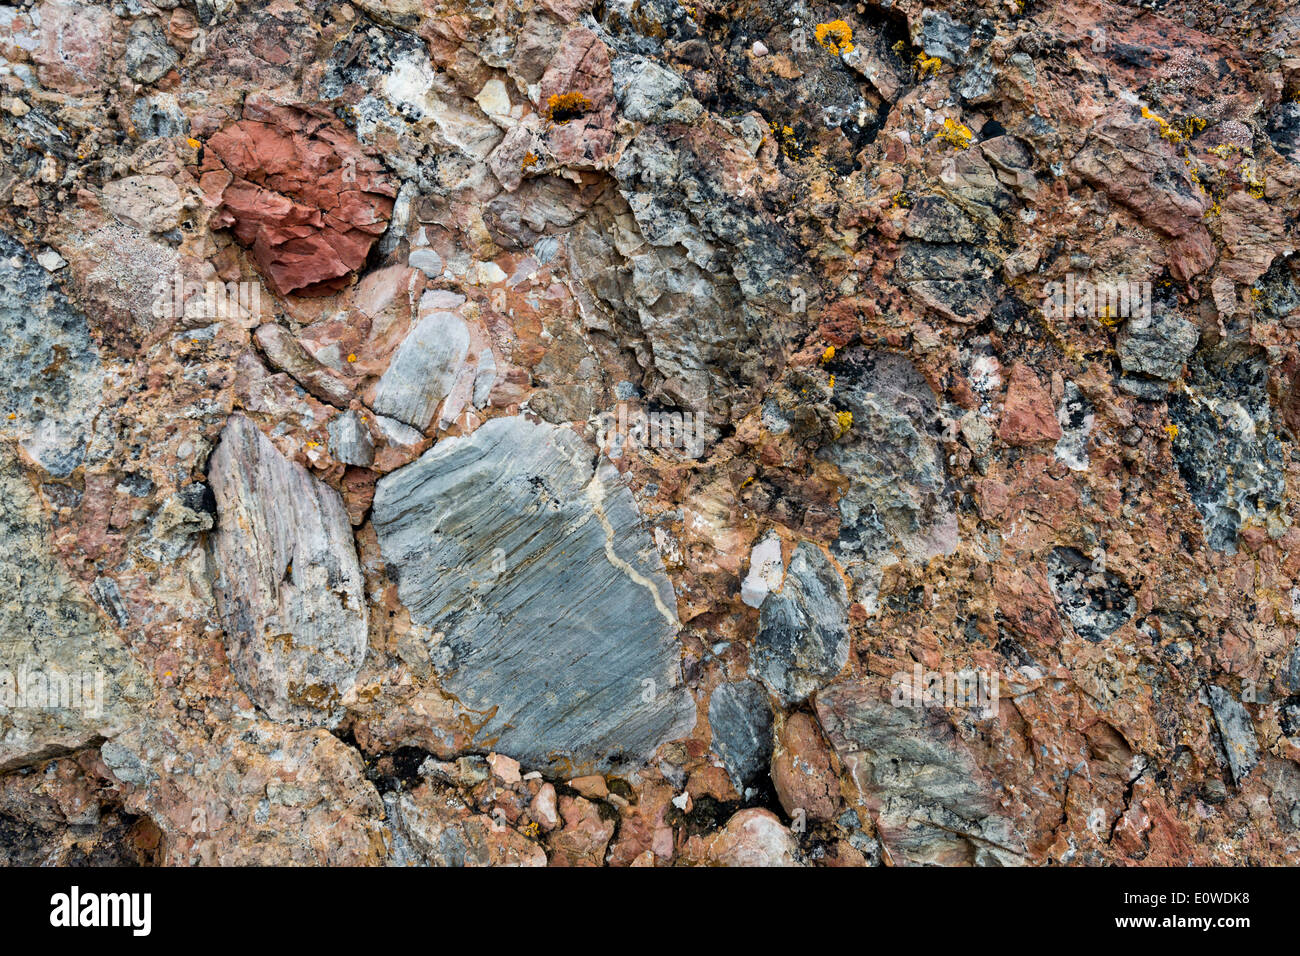 Los sedimentos que contienen óxido de hierro, conglomerados de los escombros de la Caledonian cordillera, conocida como viejo rojo Foto de stock